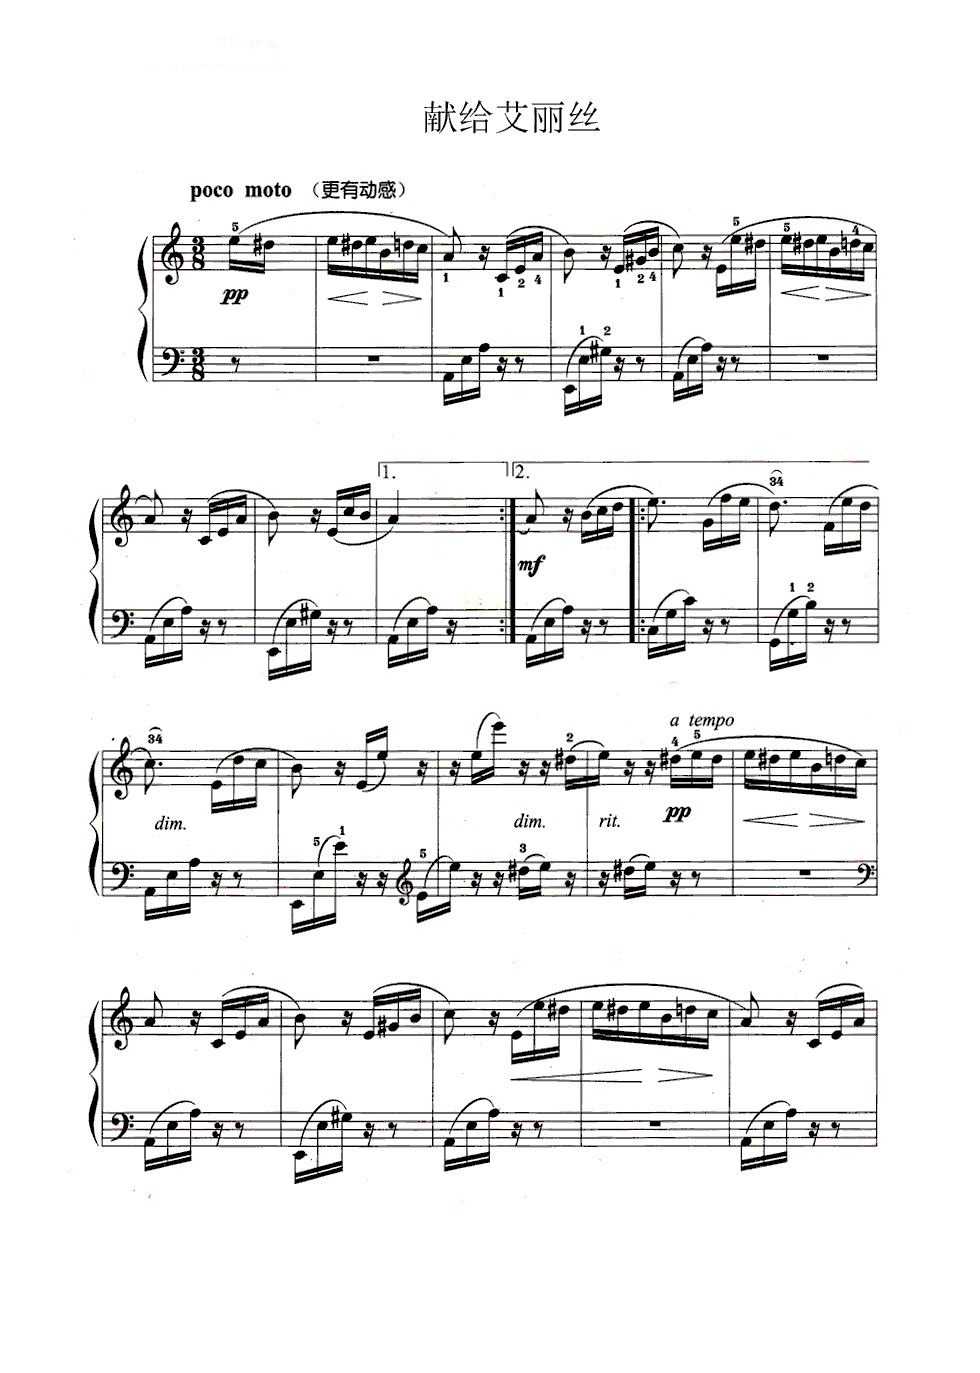 致爱丽丝钢琴简谱双手慢速教学视频(献给爱丽丝钢琴简谱双手完整版教学视频)